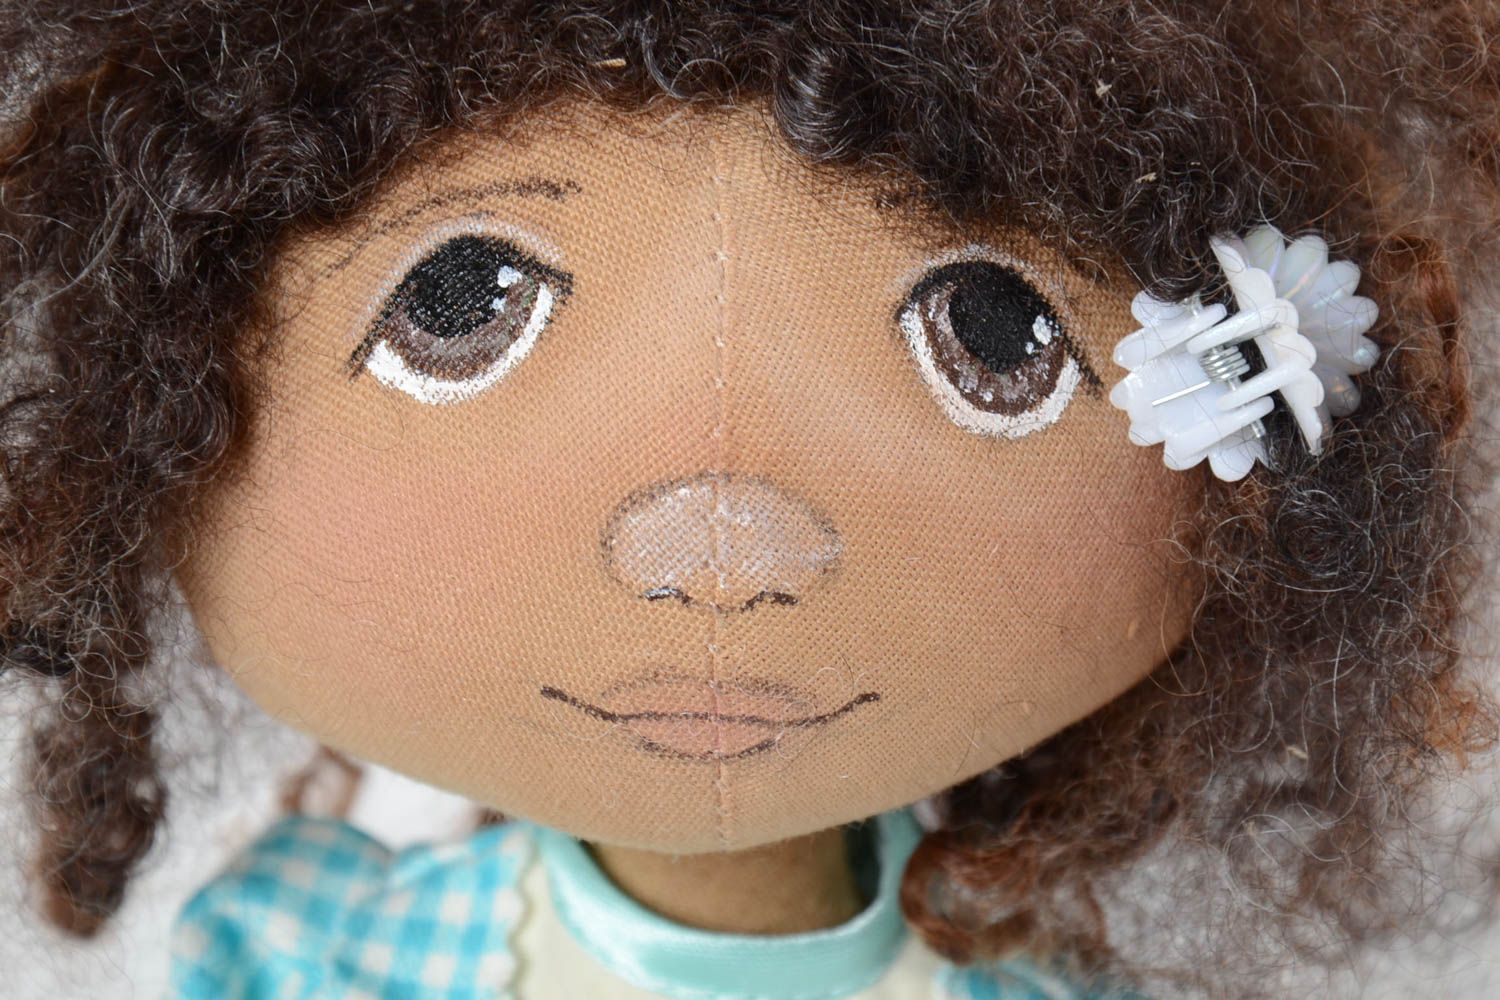 Тканевая мягкая игрушка ручной работы кукла ароматизированная кофе и ванилью фото 5